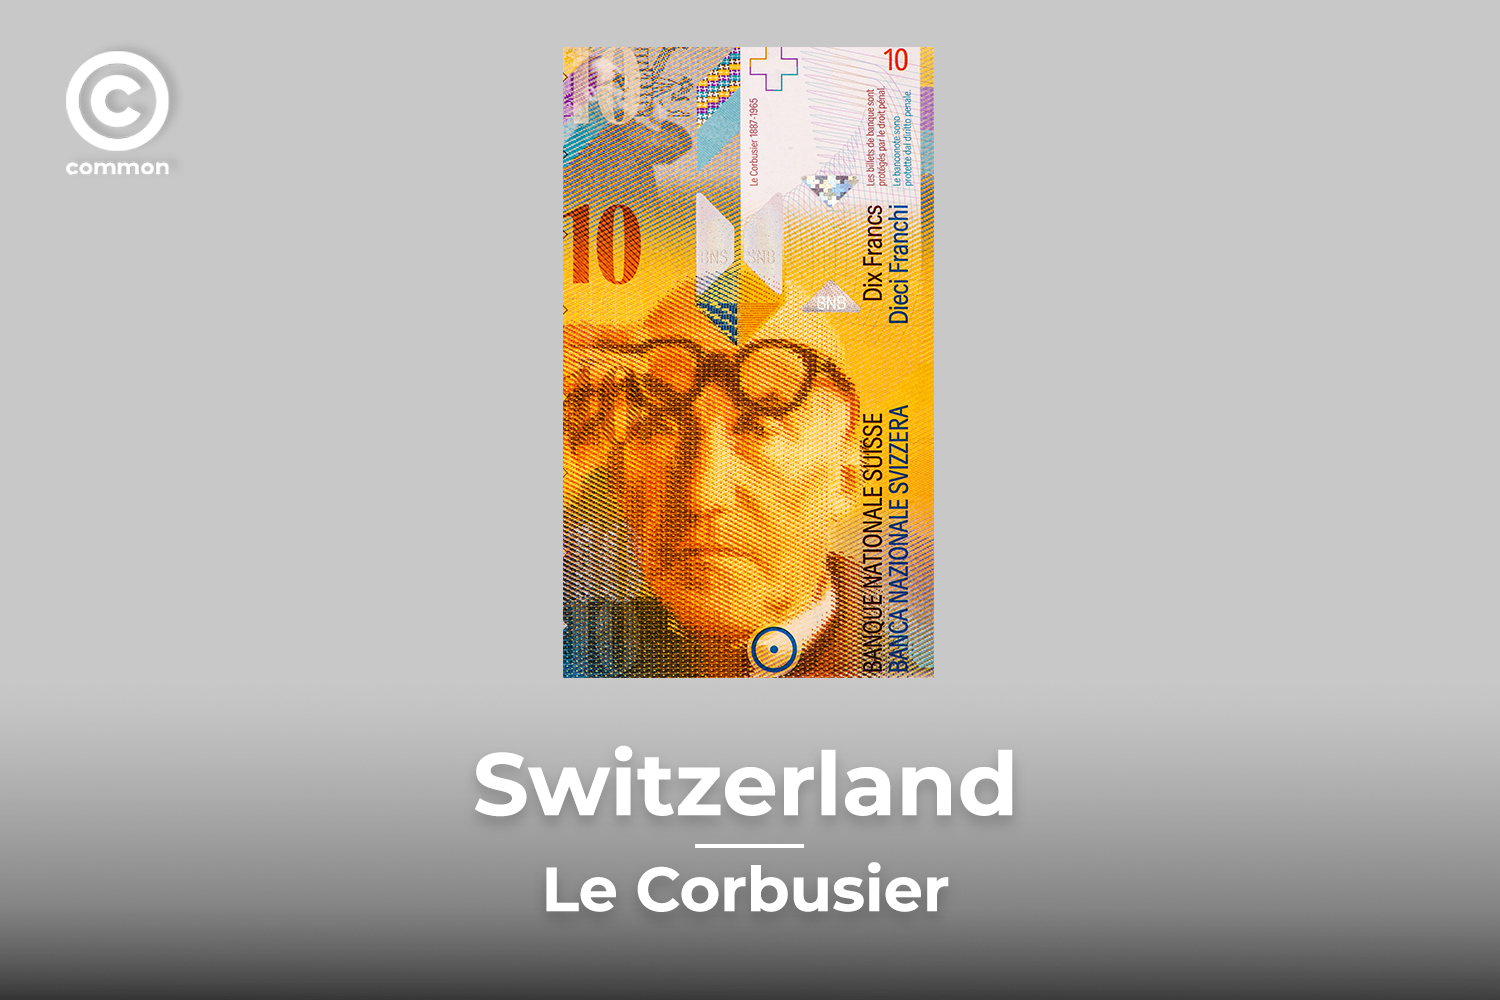 Switzerland banknote